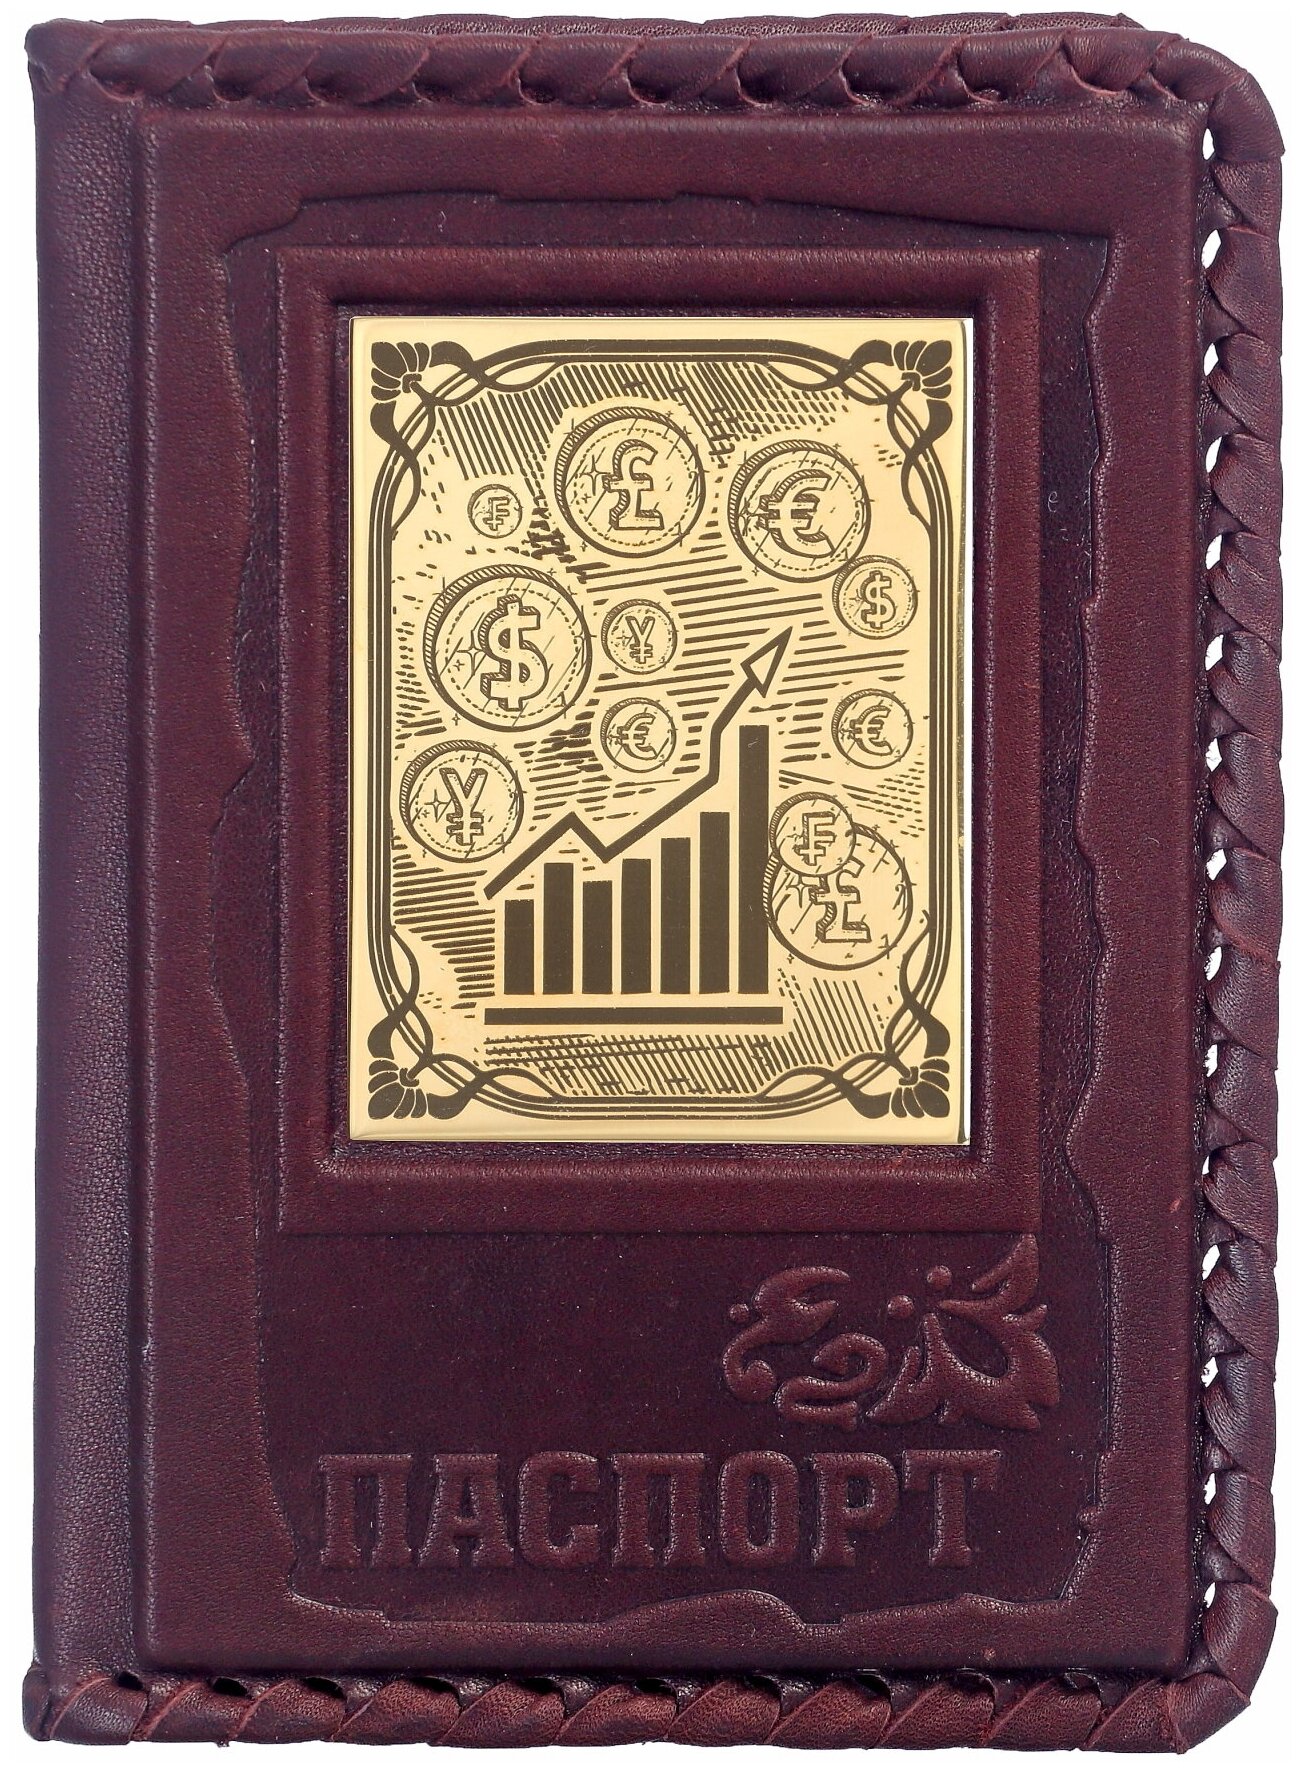 Обложка для паспорта МАКЕЙ